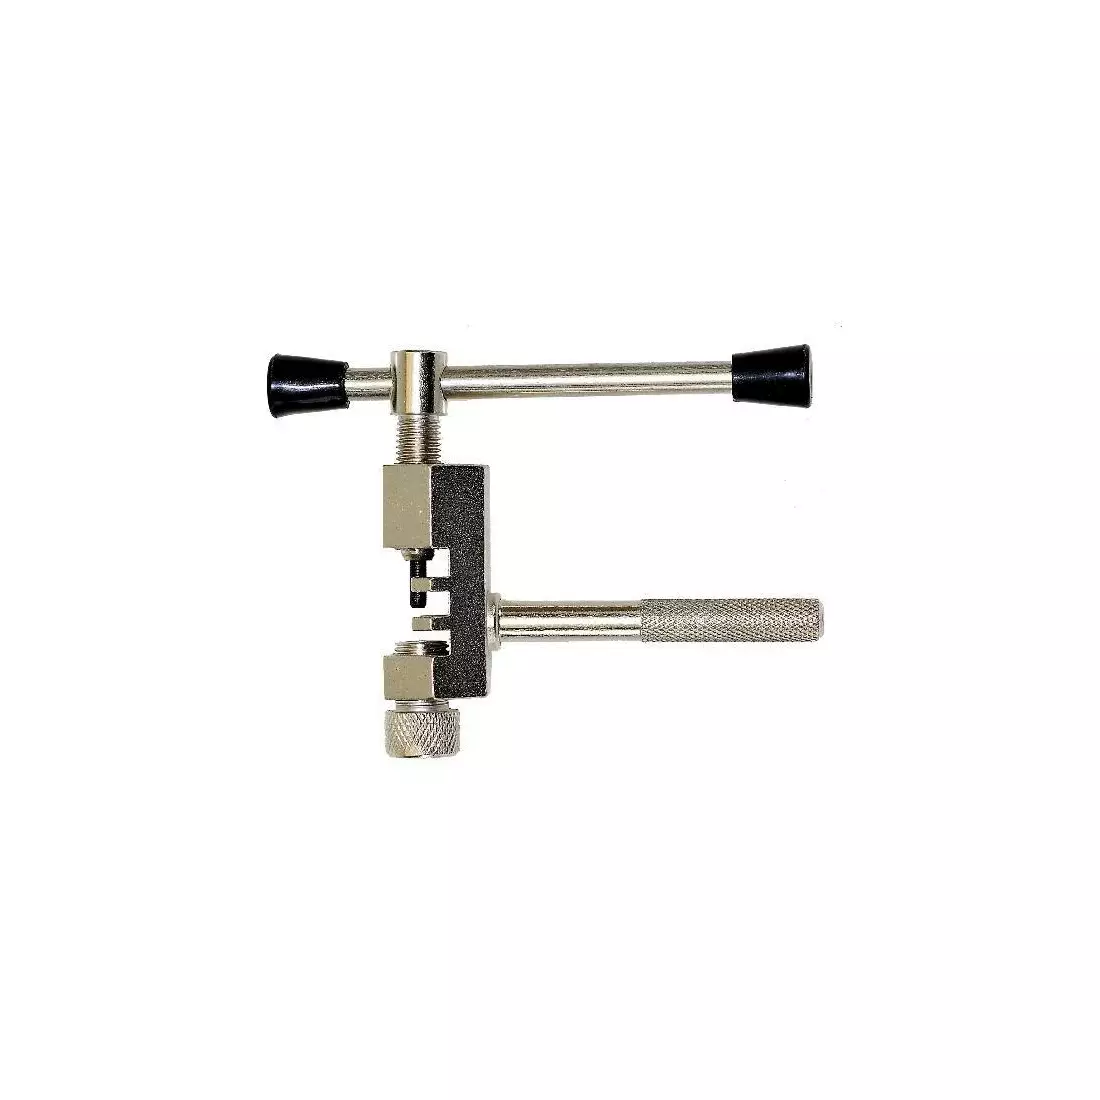 Kettenabzieher / Schlüssel für eine Fahrradkette HG/UG